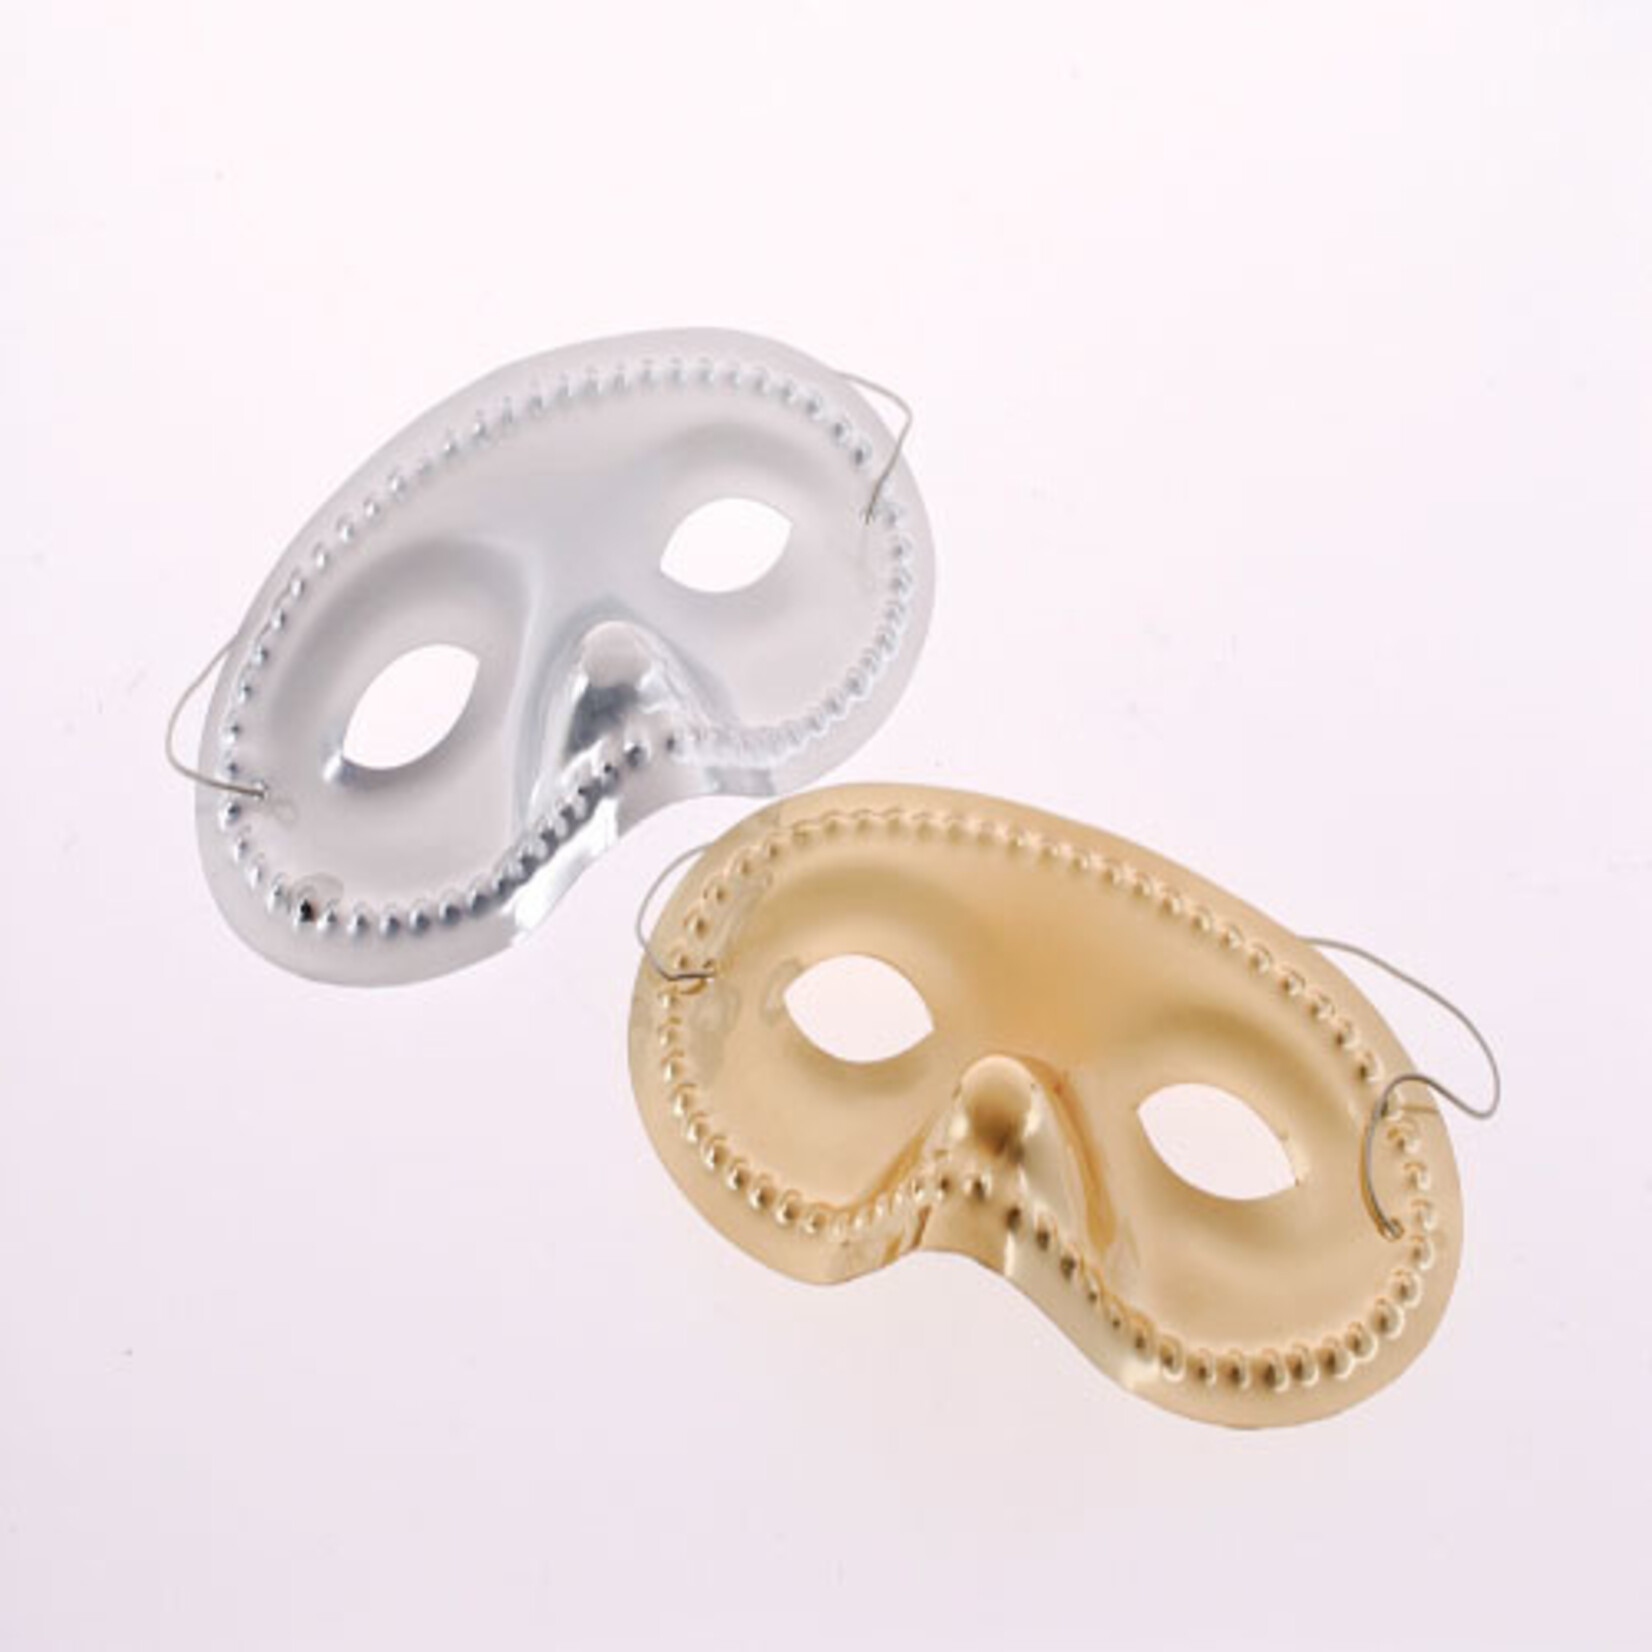 Economy Eye Masks 3.5 x 6.25 Inch